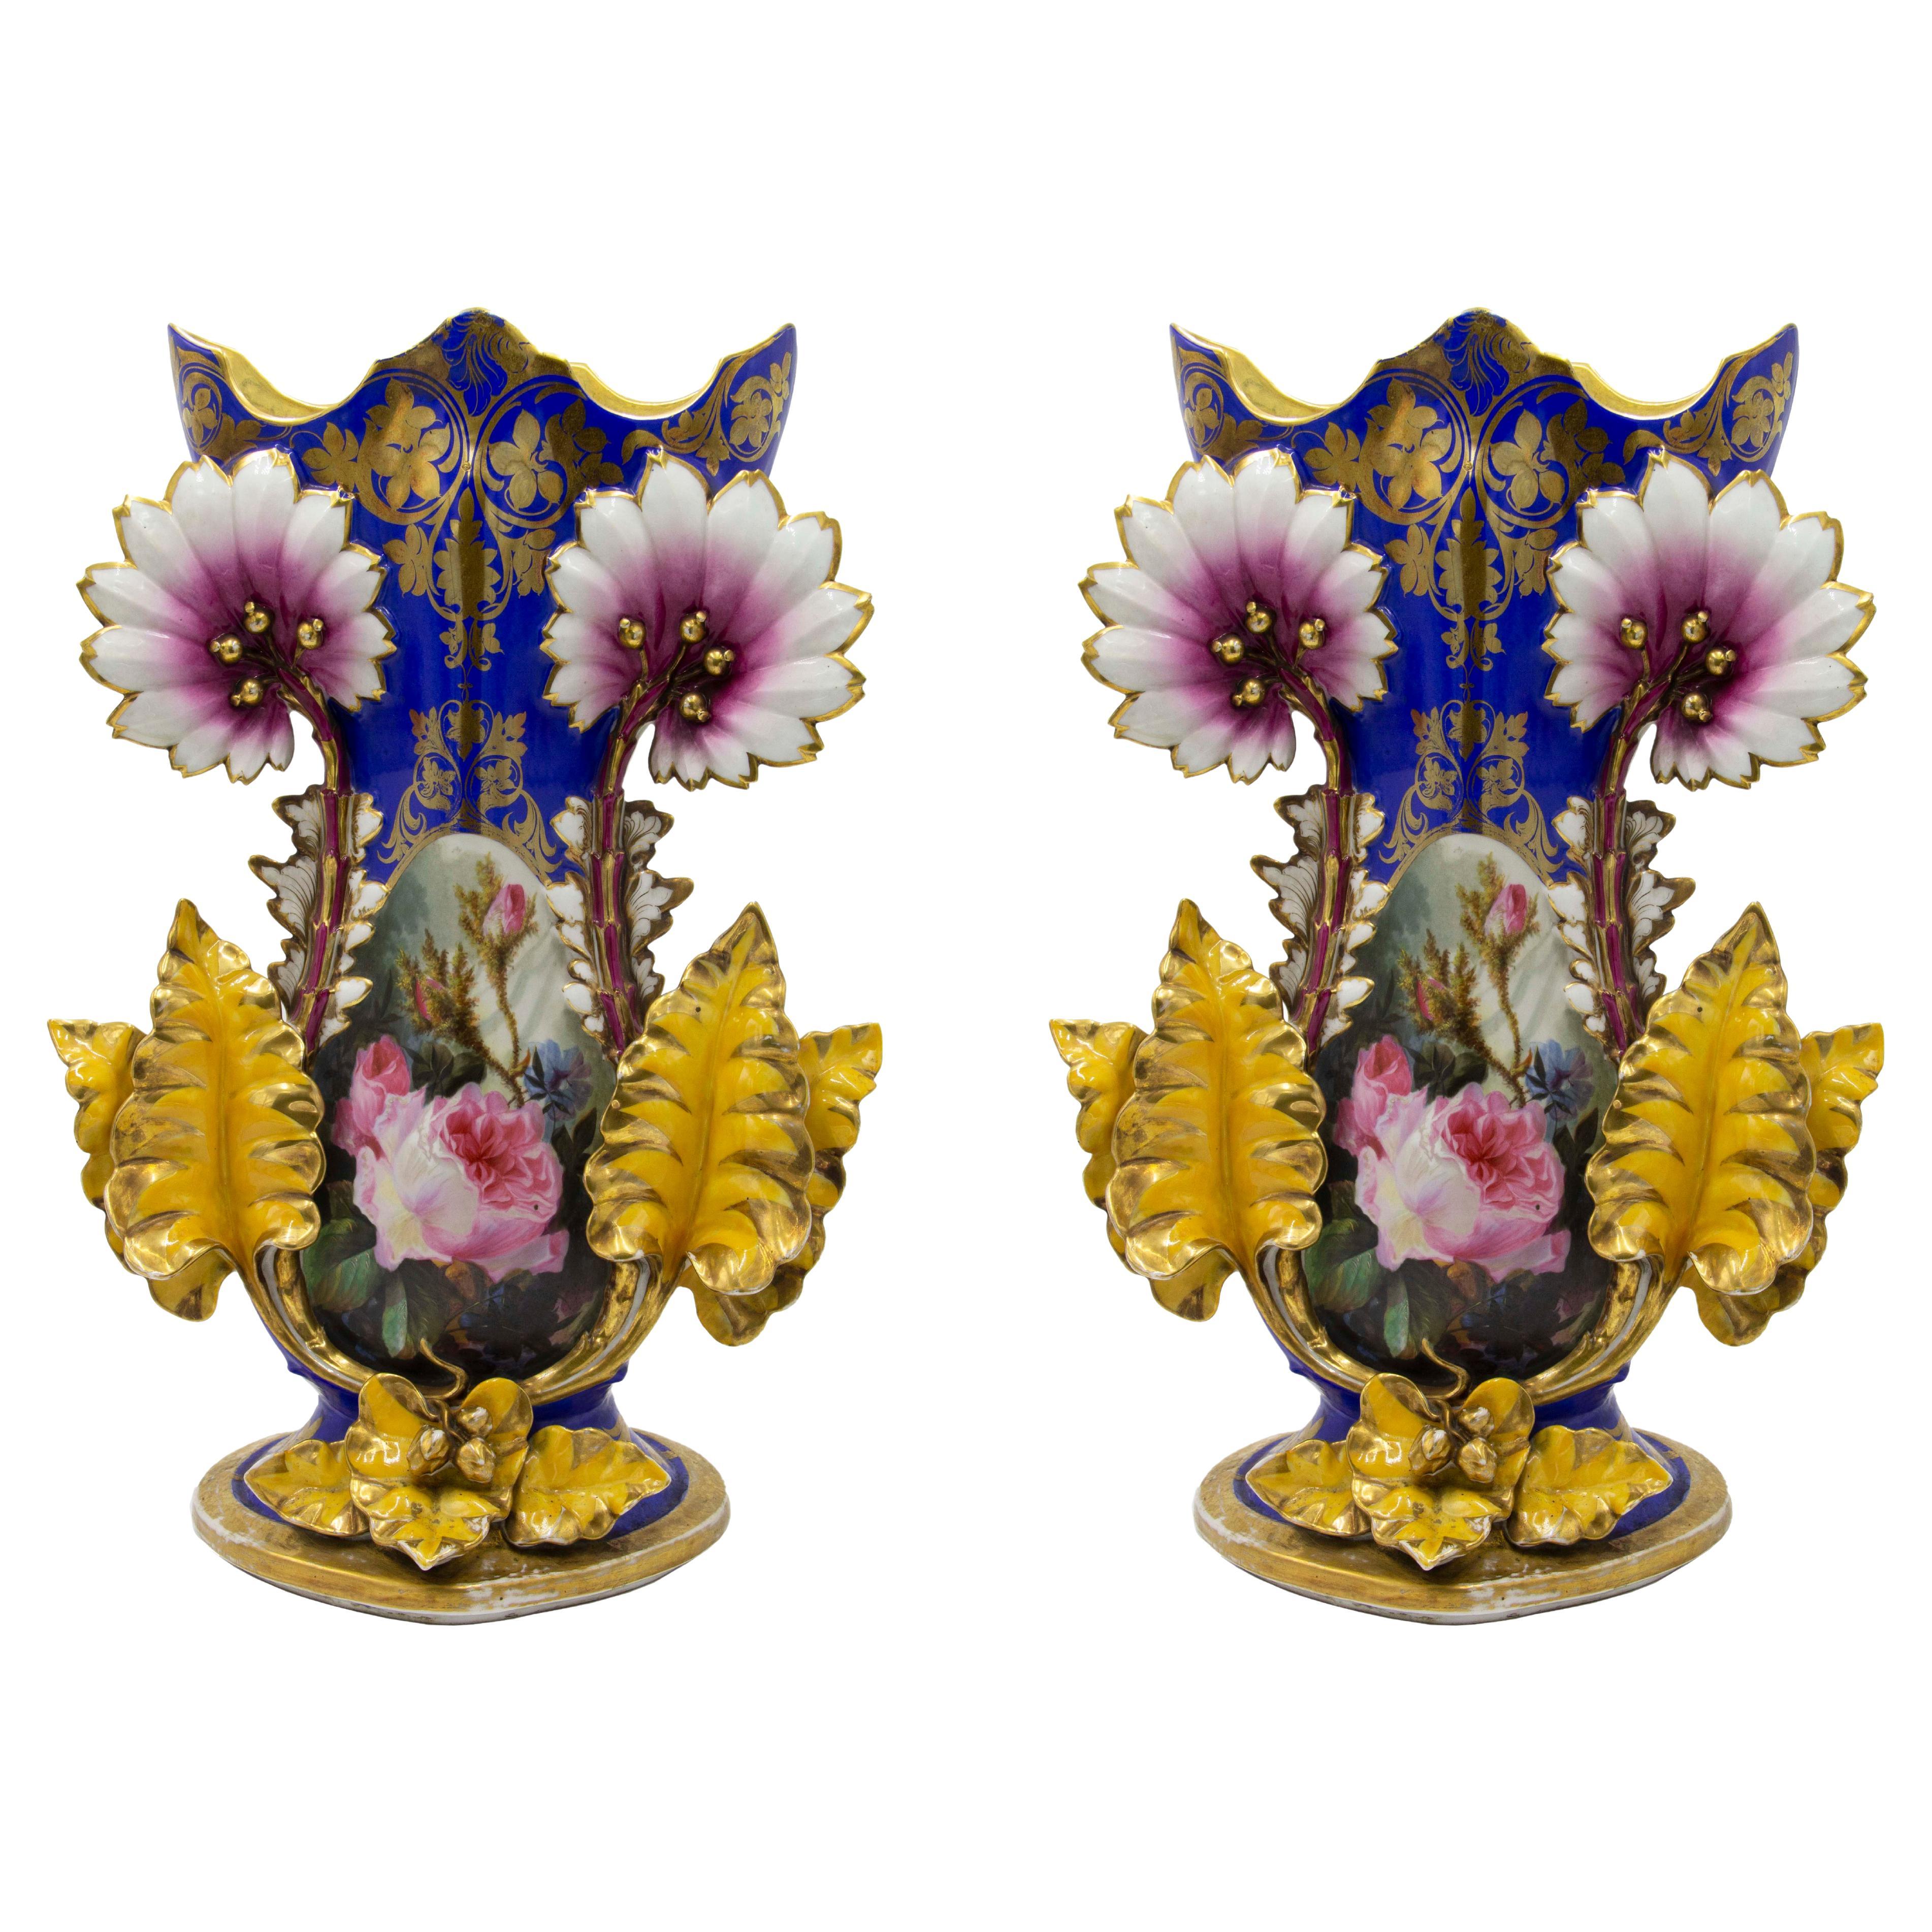 Paire de vases en porcelaine de Chelsea de l'époque victorienne anglaise